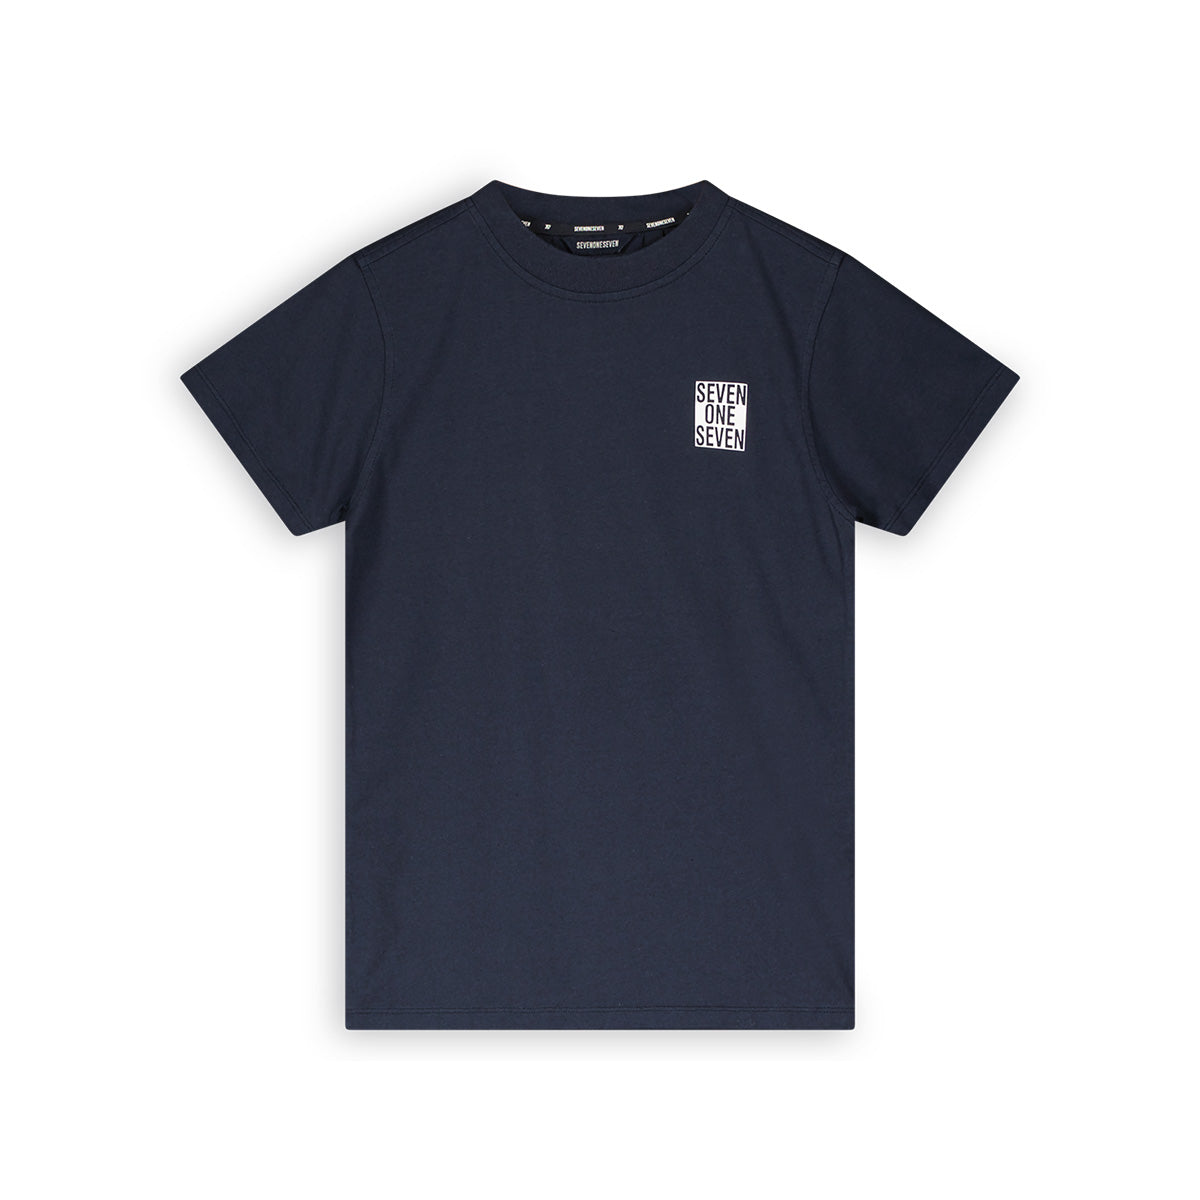 Jongens 717 T-shirt van SevenOneSeven in de kleur Navy Blazer in maat 170-176.